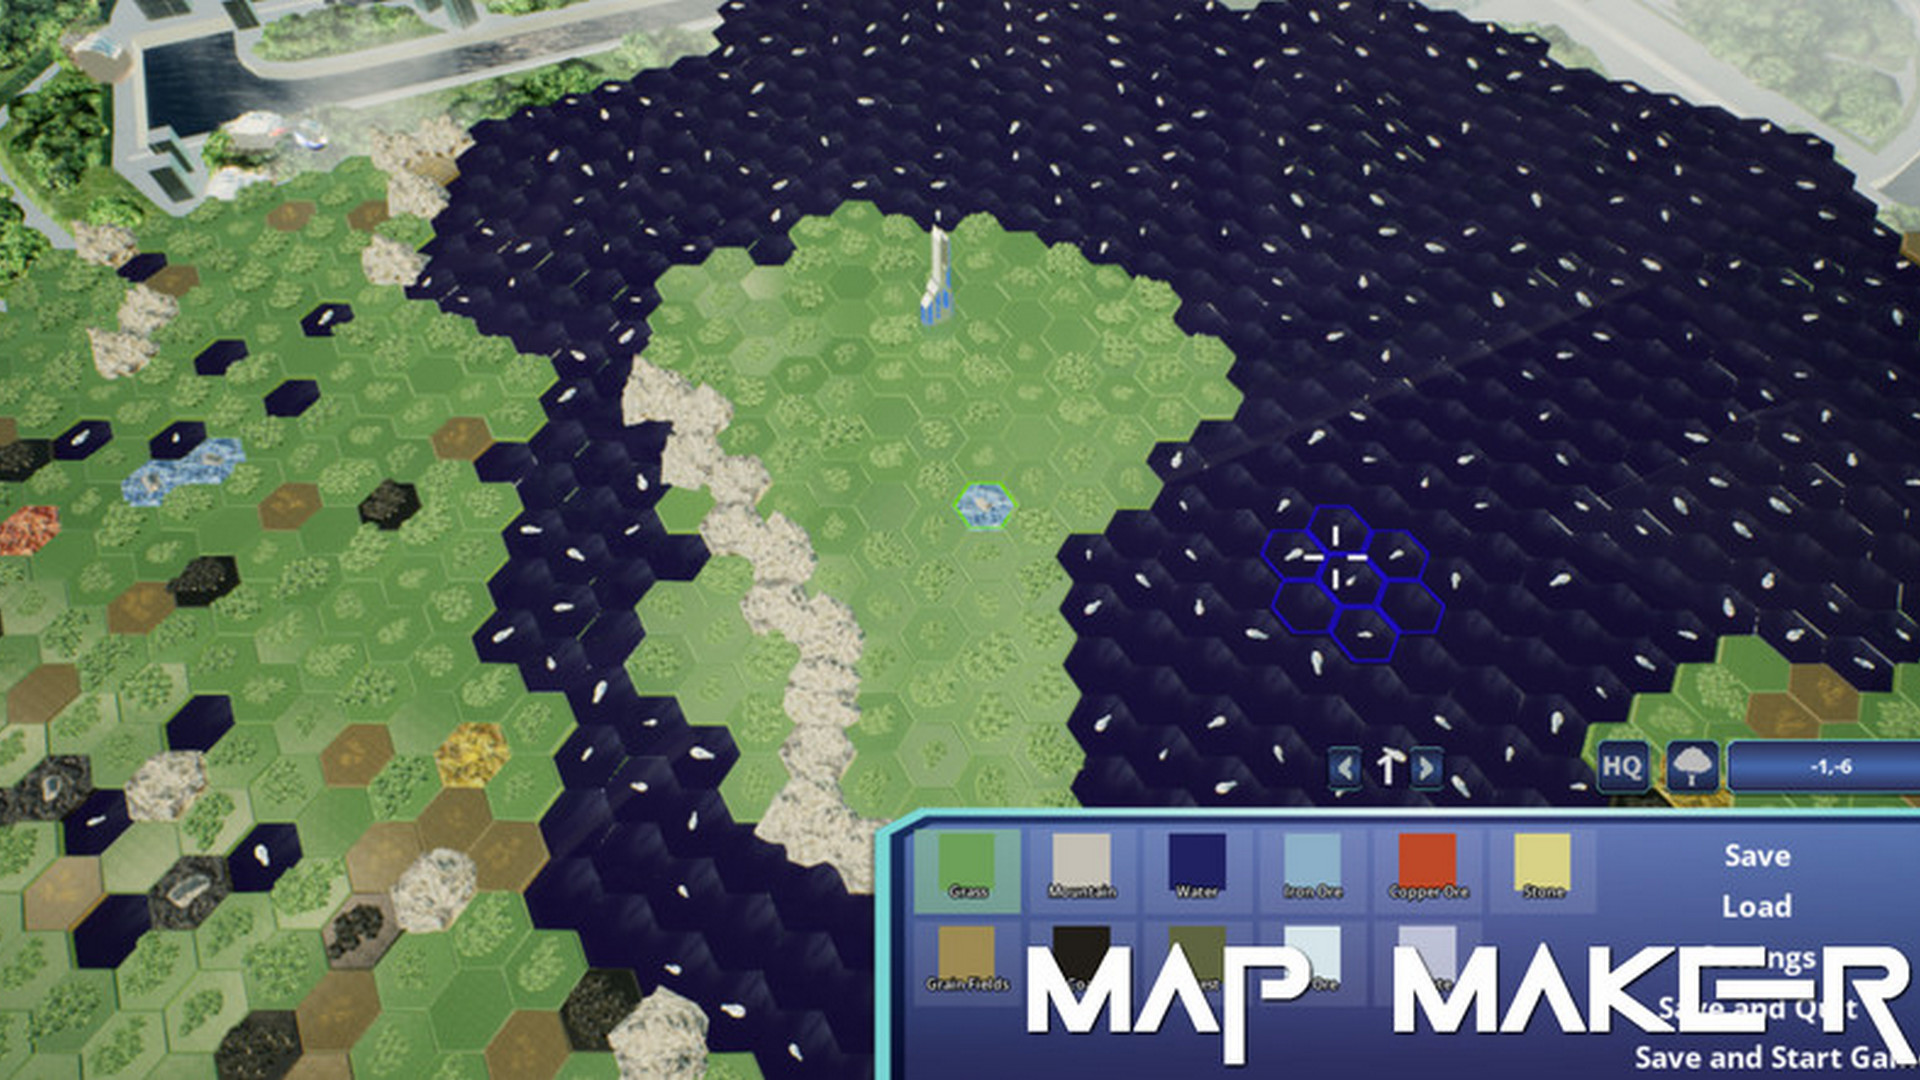 Meu jogo Hexfactory foi lançado na Steam :) Depois de fazer mods para  Factorio e Satisfactory, resolvi trabalhar neste jogo que é tipo um City  Builder em hexágonos. Feito na Unreal Engine